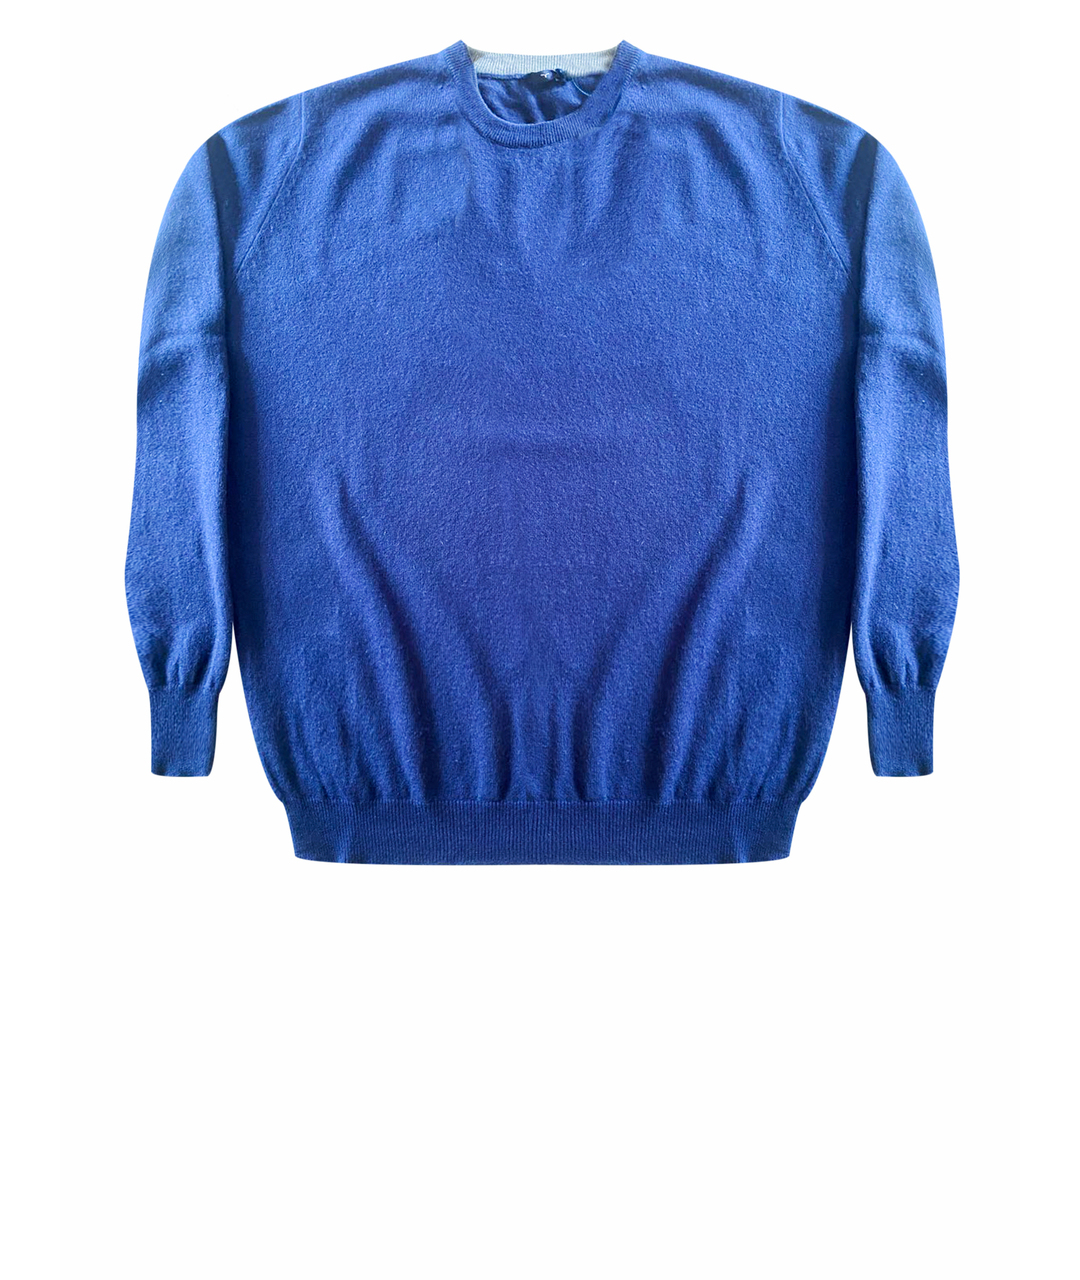 LARUSMIANI Синий кашемировый джемпер / свитер, фото 1